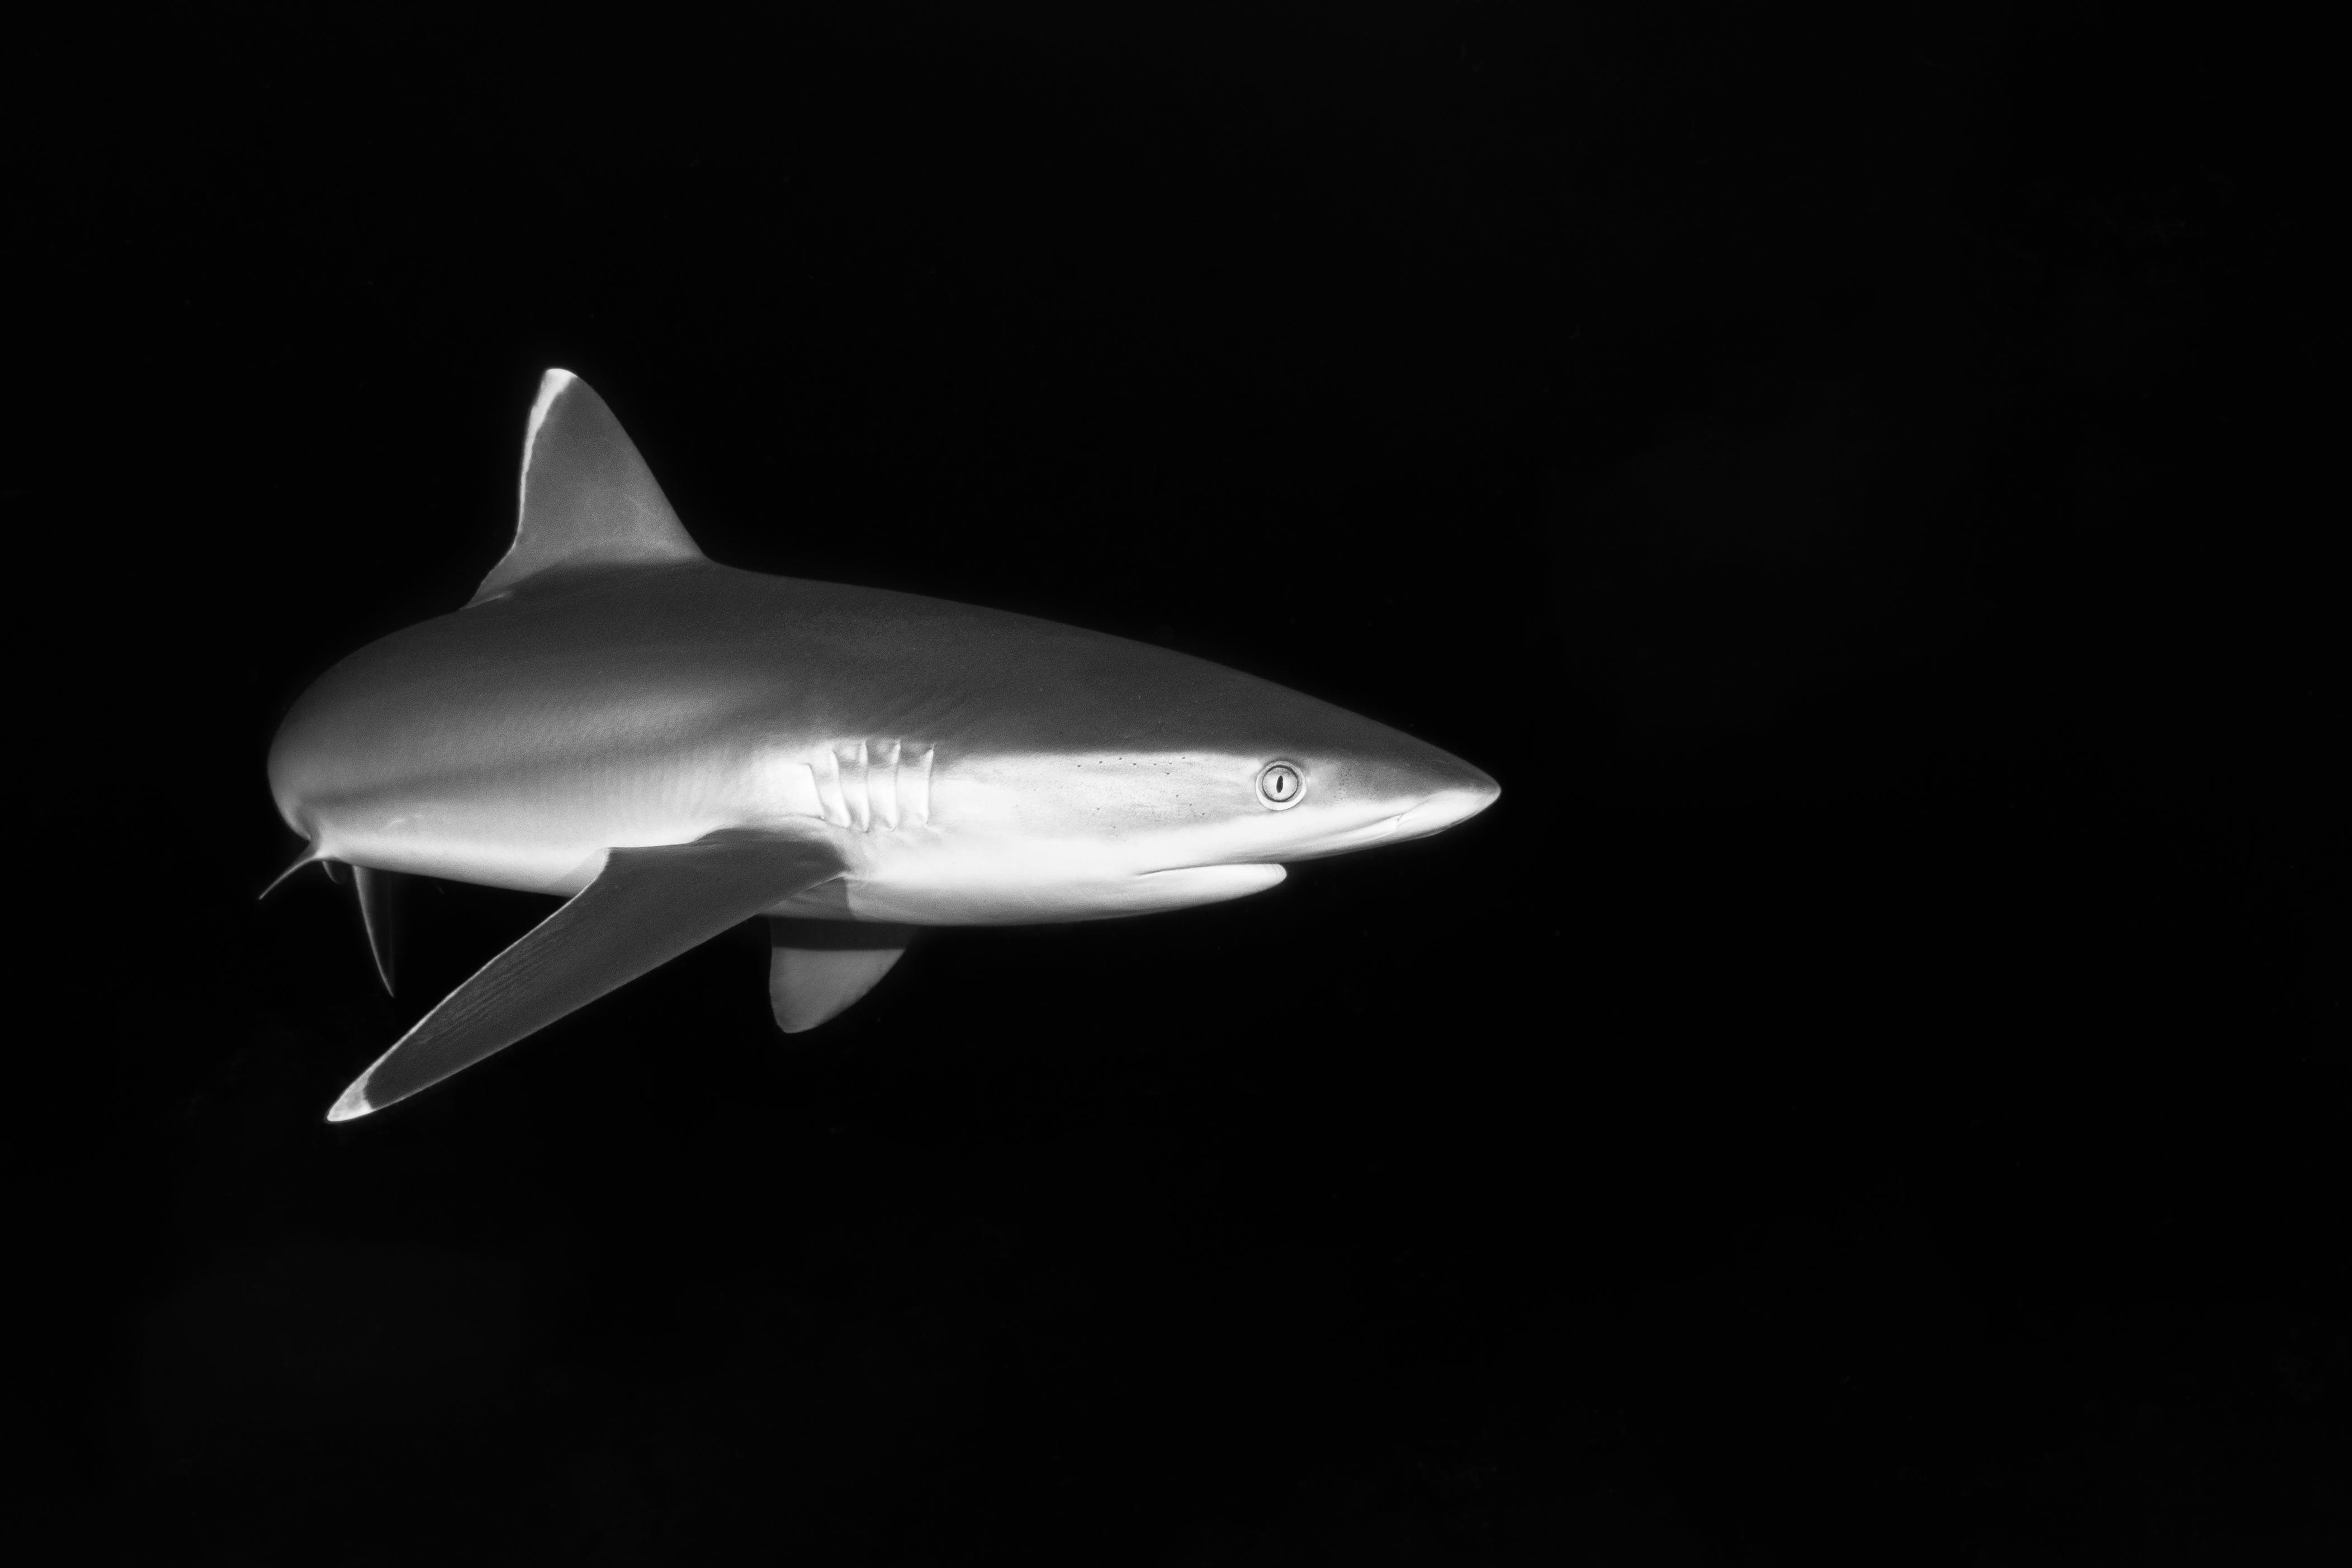 Gratis Fotos de stock gratuitas de animal, bajo el agua, blanco y negro Foto de stock